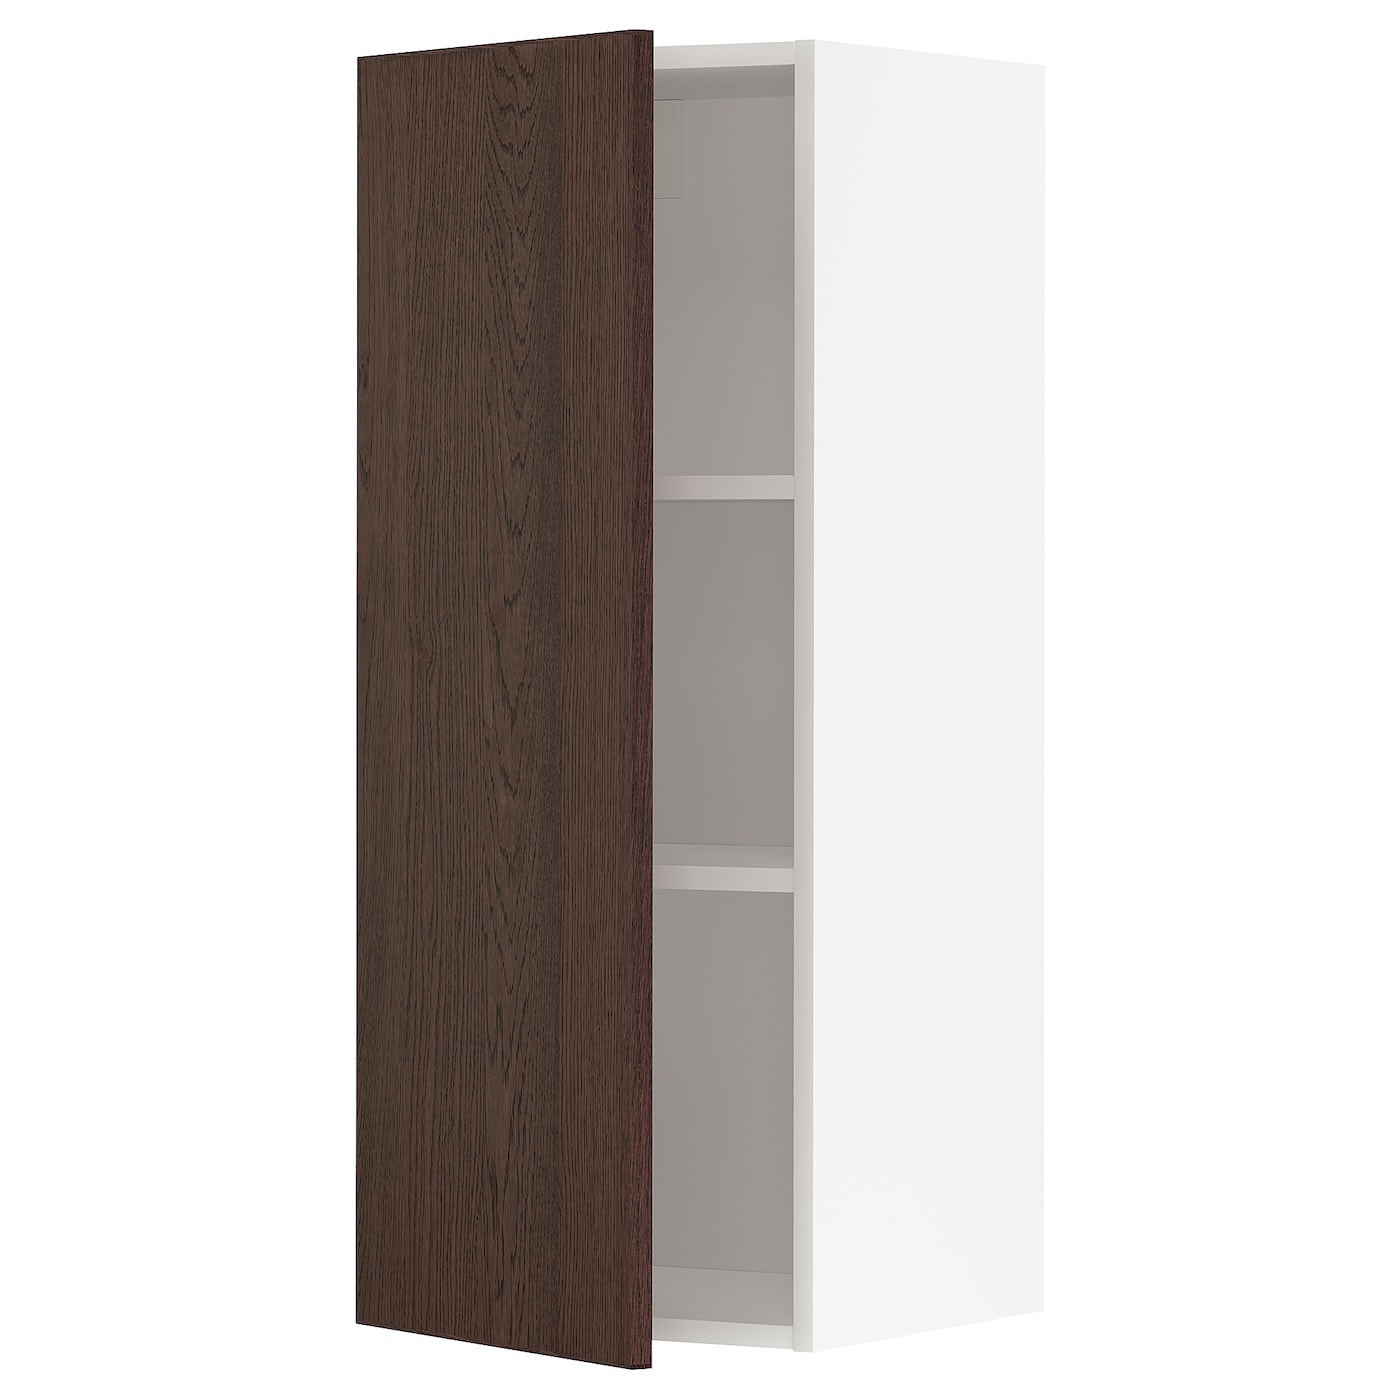 Навесной шкаф с полкой - METOD IKEA/ МЕТОД ИКЕА, 100х40 см, белый/коричневый